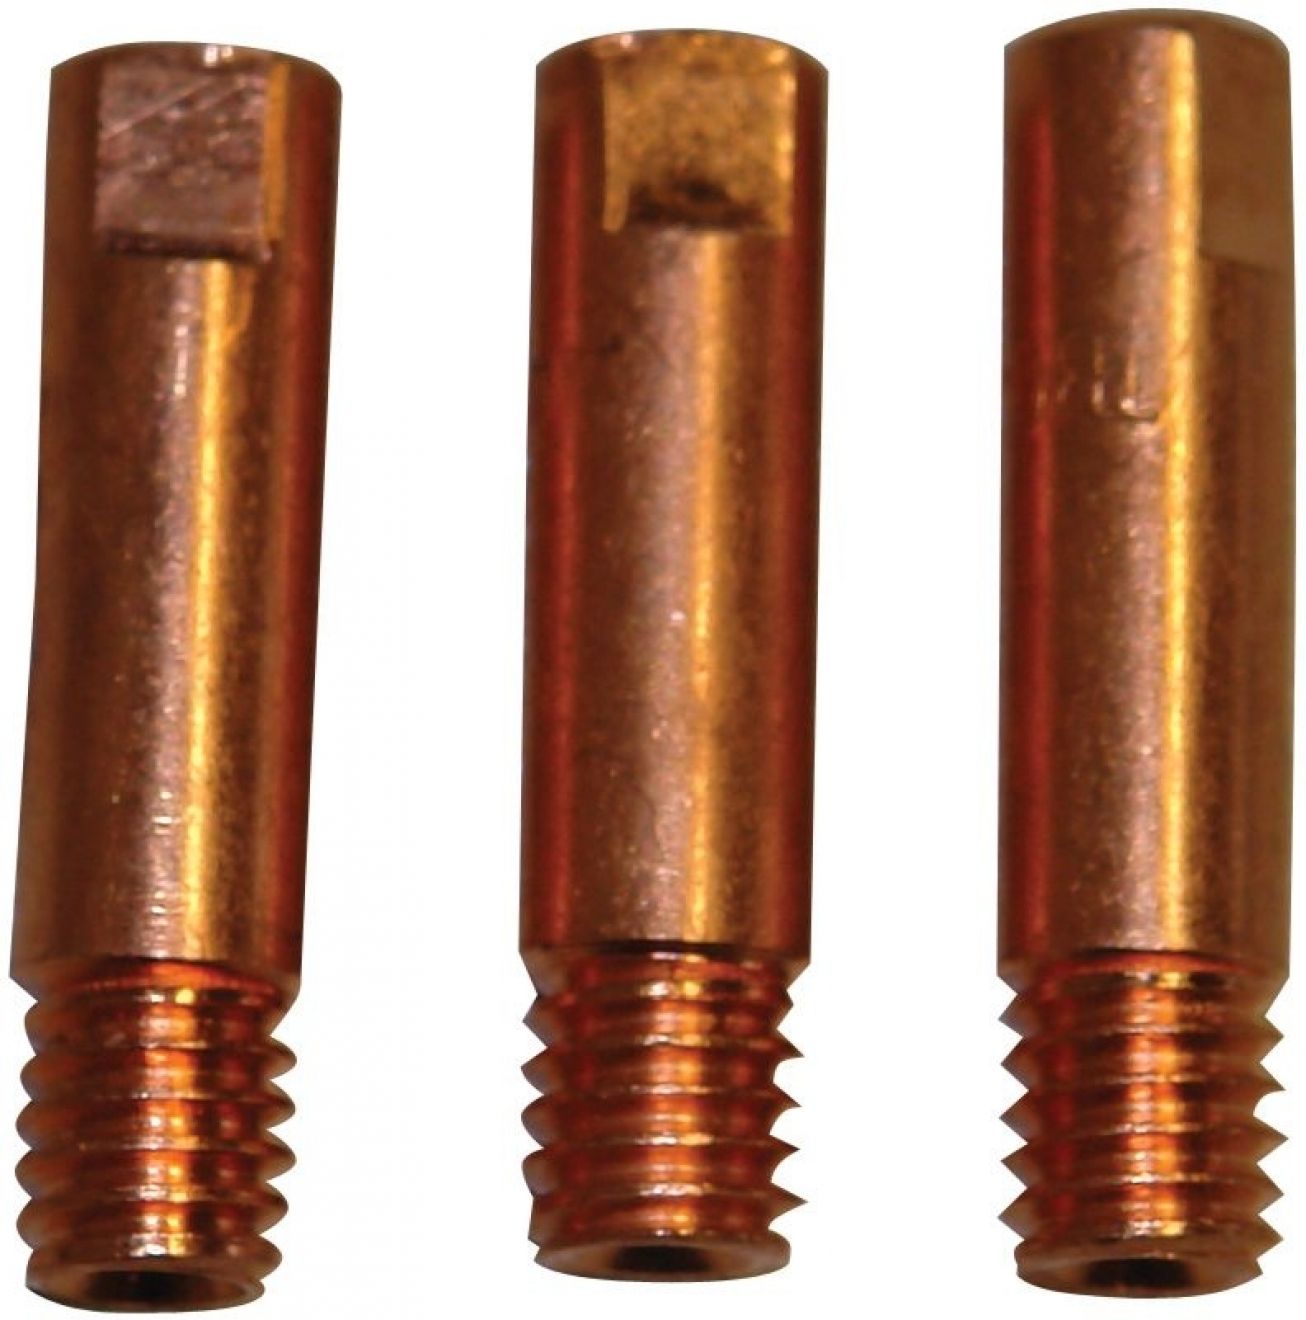 GÜDE příslušenství ke svařovacímu kabelu - proudová tryska Cu 0,8 mm, sada 41615